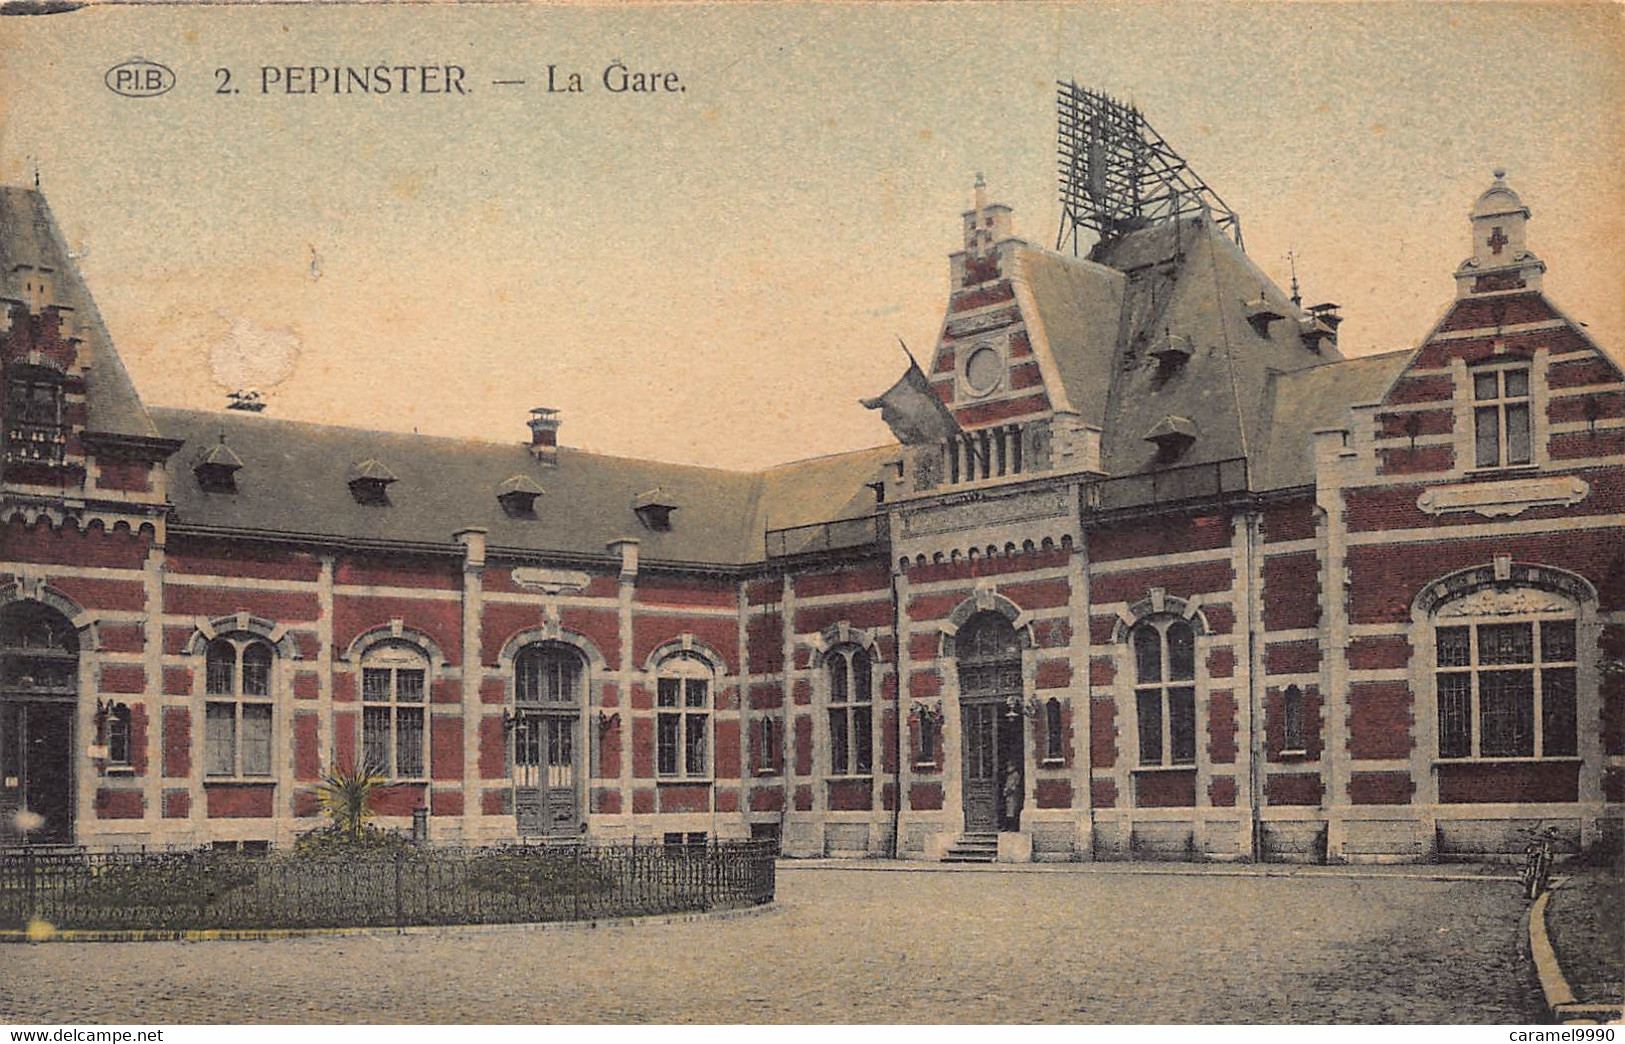 Pepinster   Statie Station La Gare   Perron   M 7194 - Pepinster